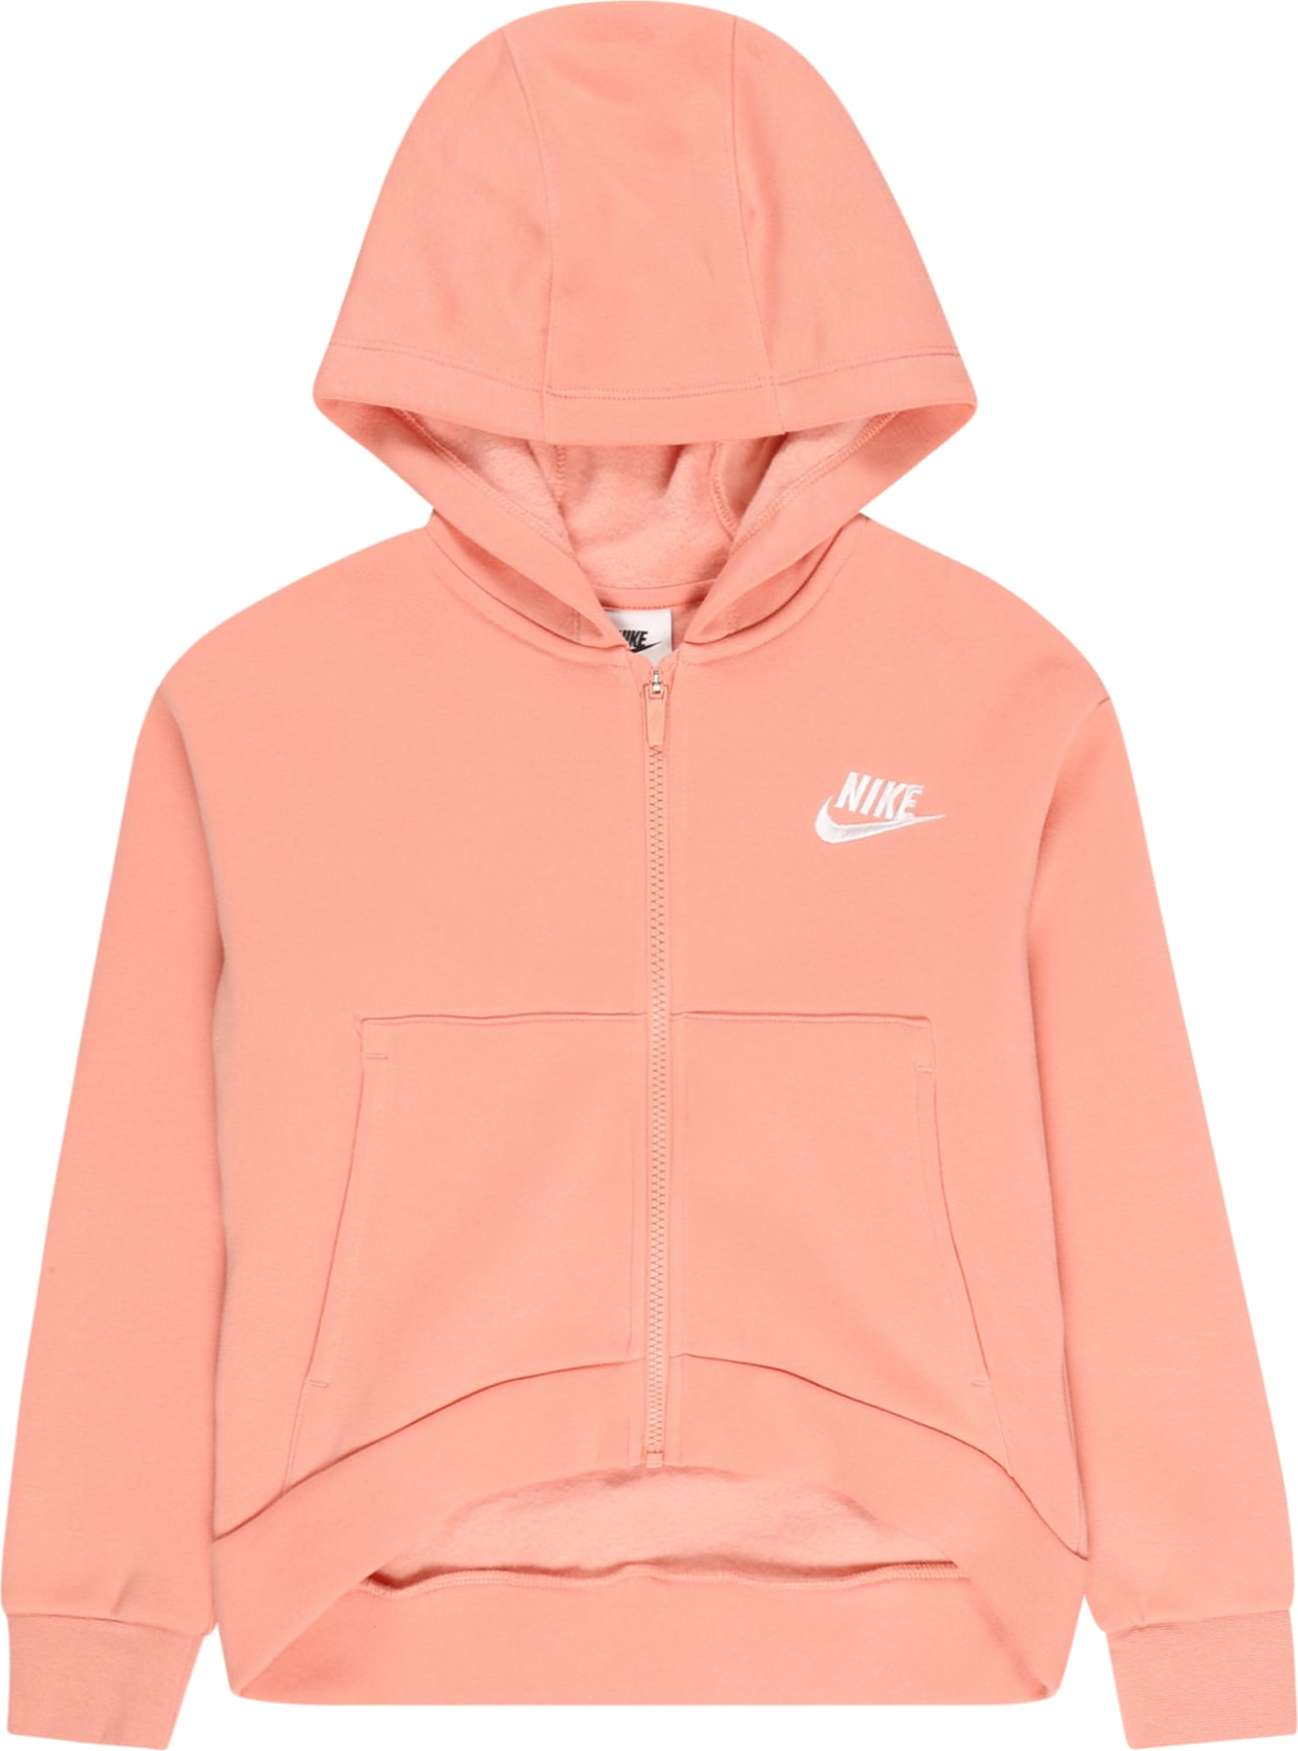 Nike Sportswear Mikina s kapucí pastelově oranžová / bílá